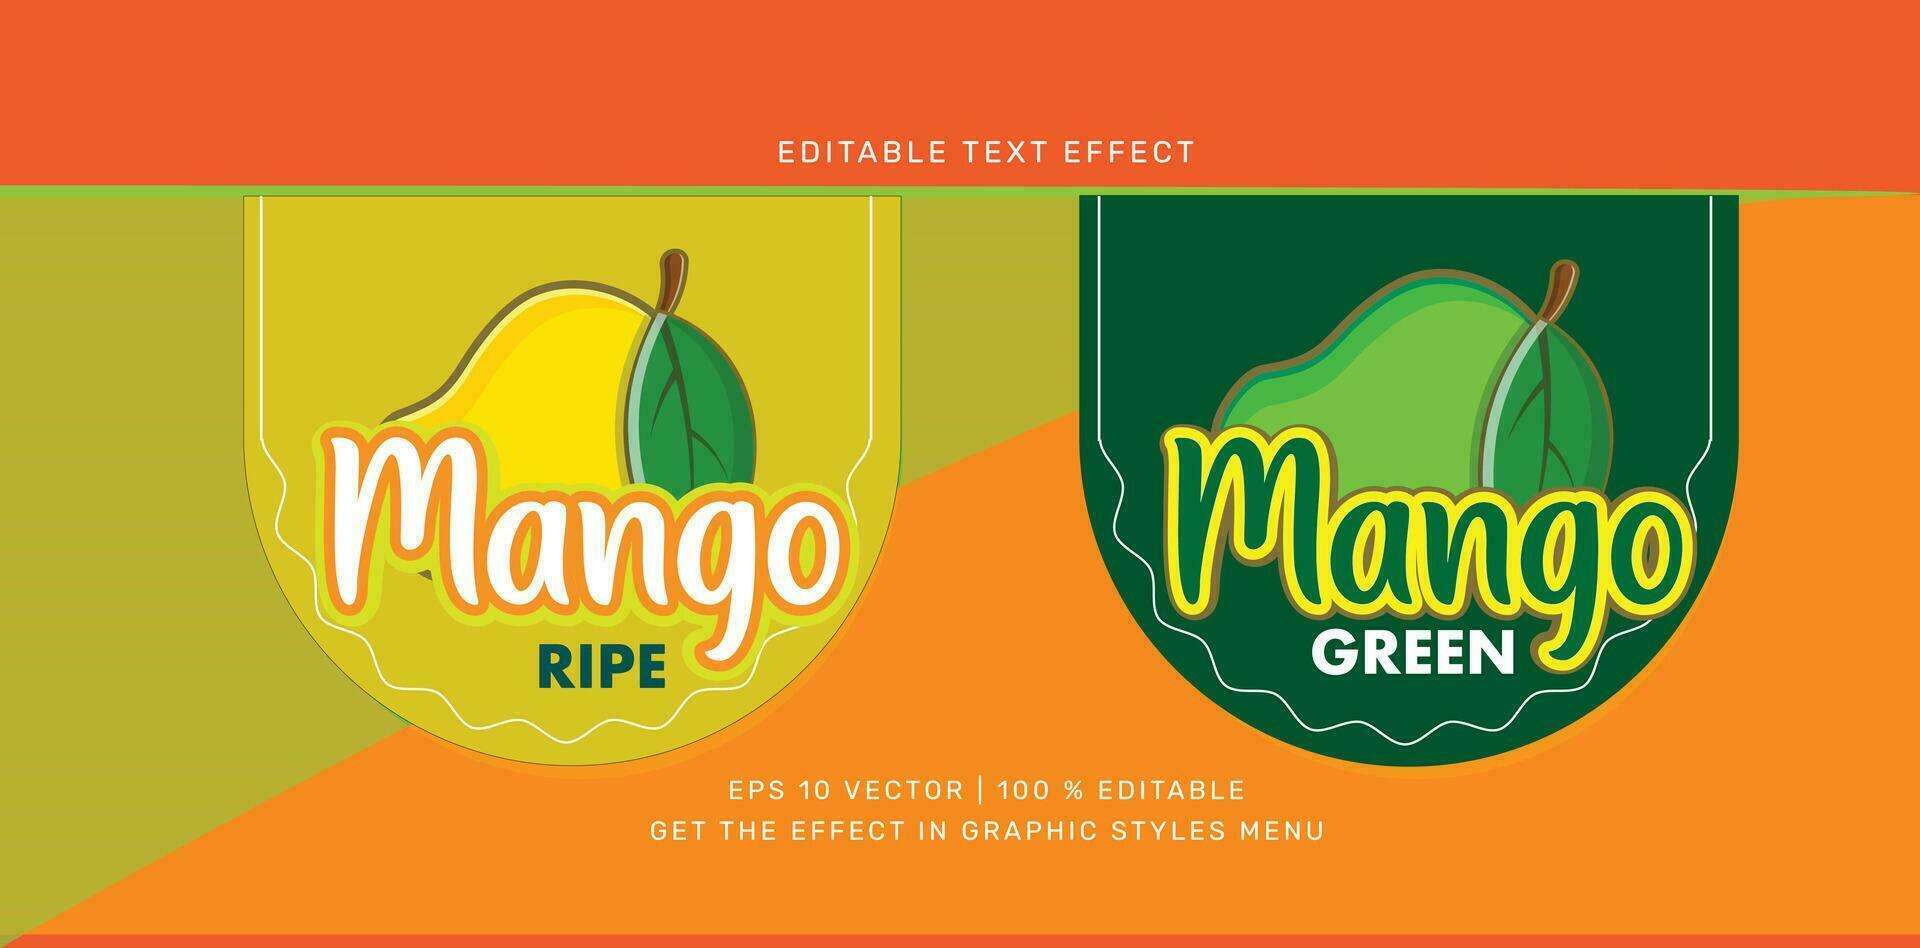 mango texto y logo editable vector